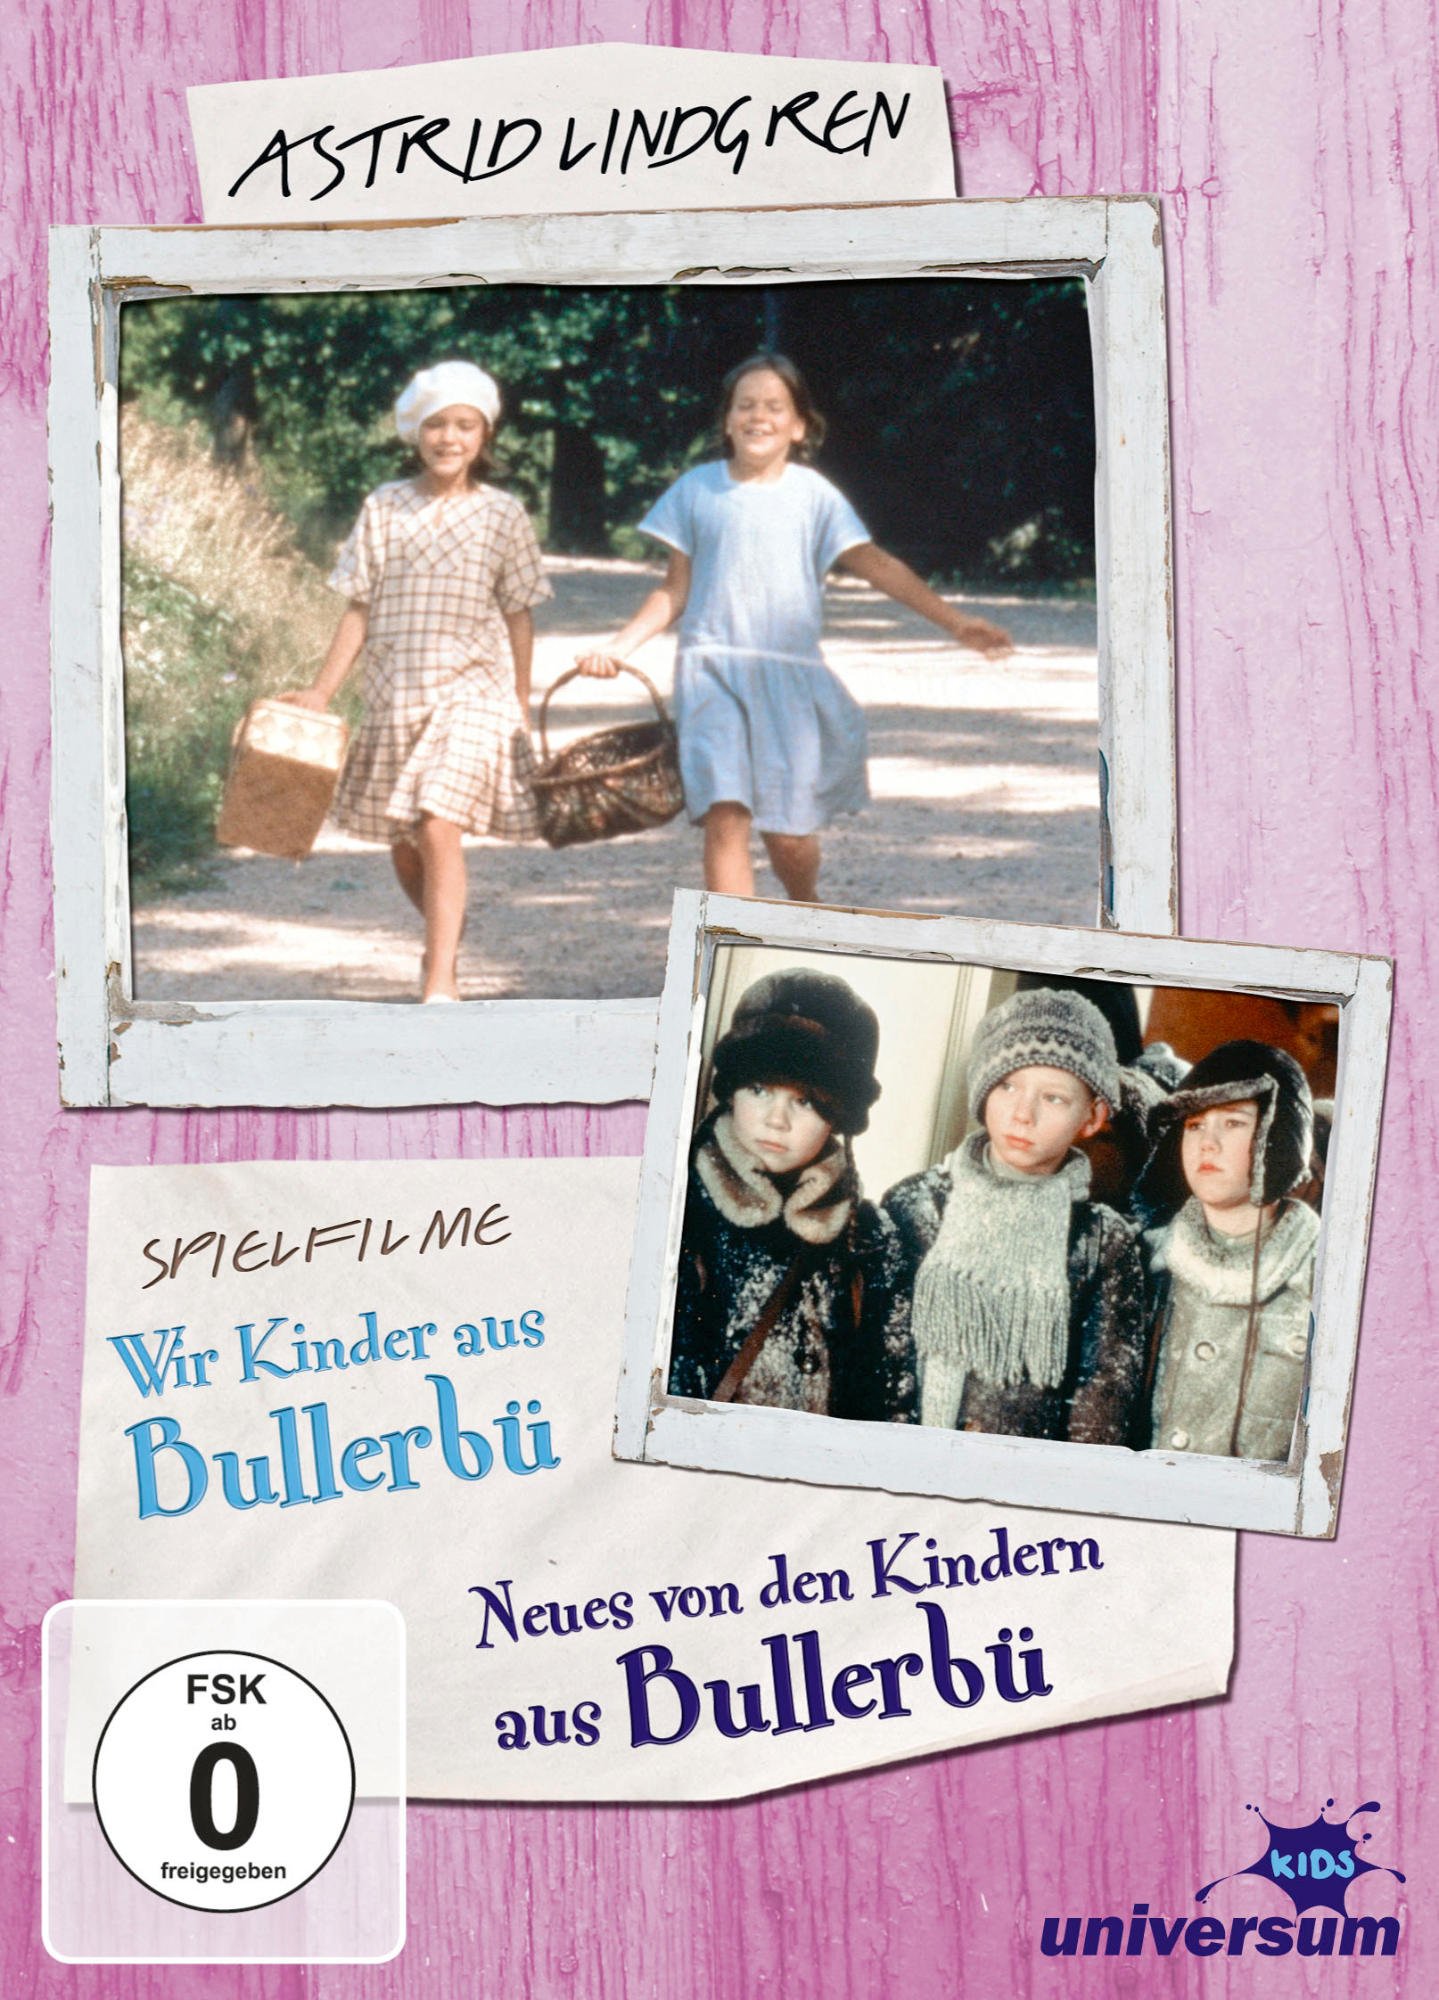 Bullerbü DVD Lindgren: Astrid - Box